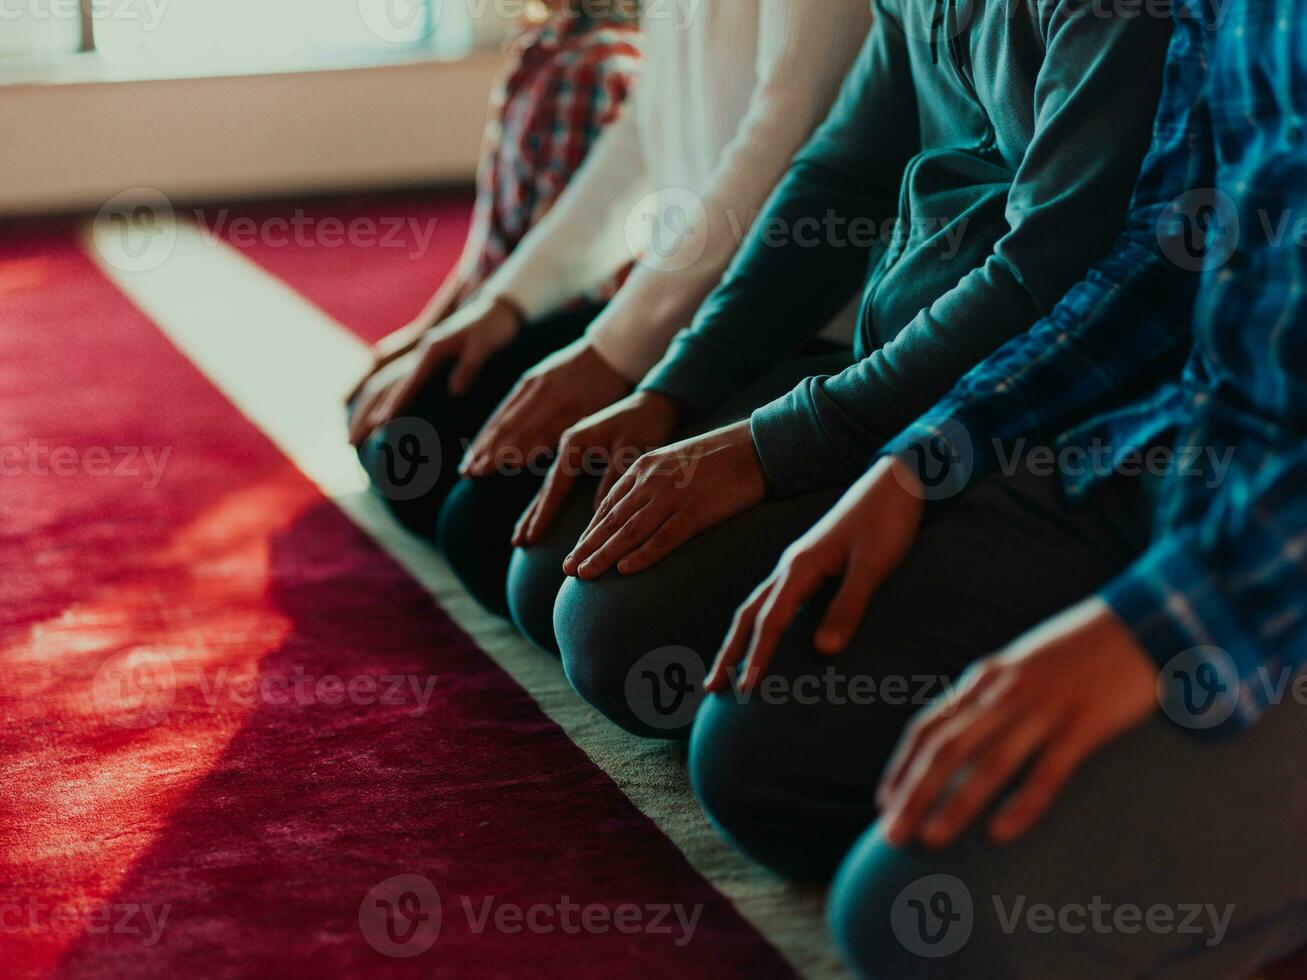 une groupe de les musulmans dans une moderne mosquée prier le musulman prière namaz, pendant le saint mois de Ramadan photo